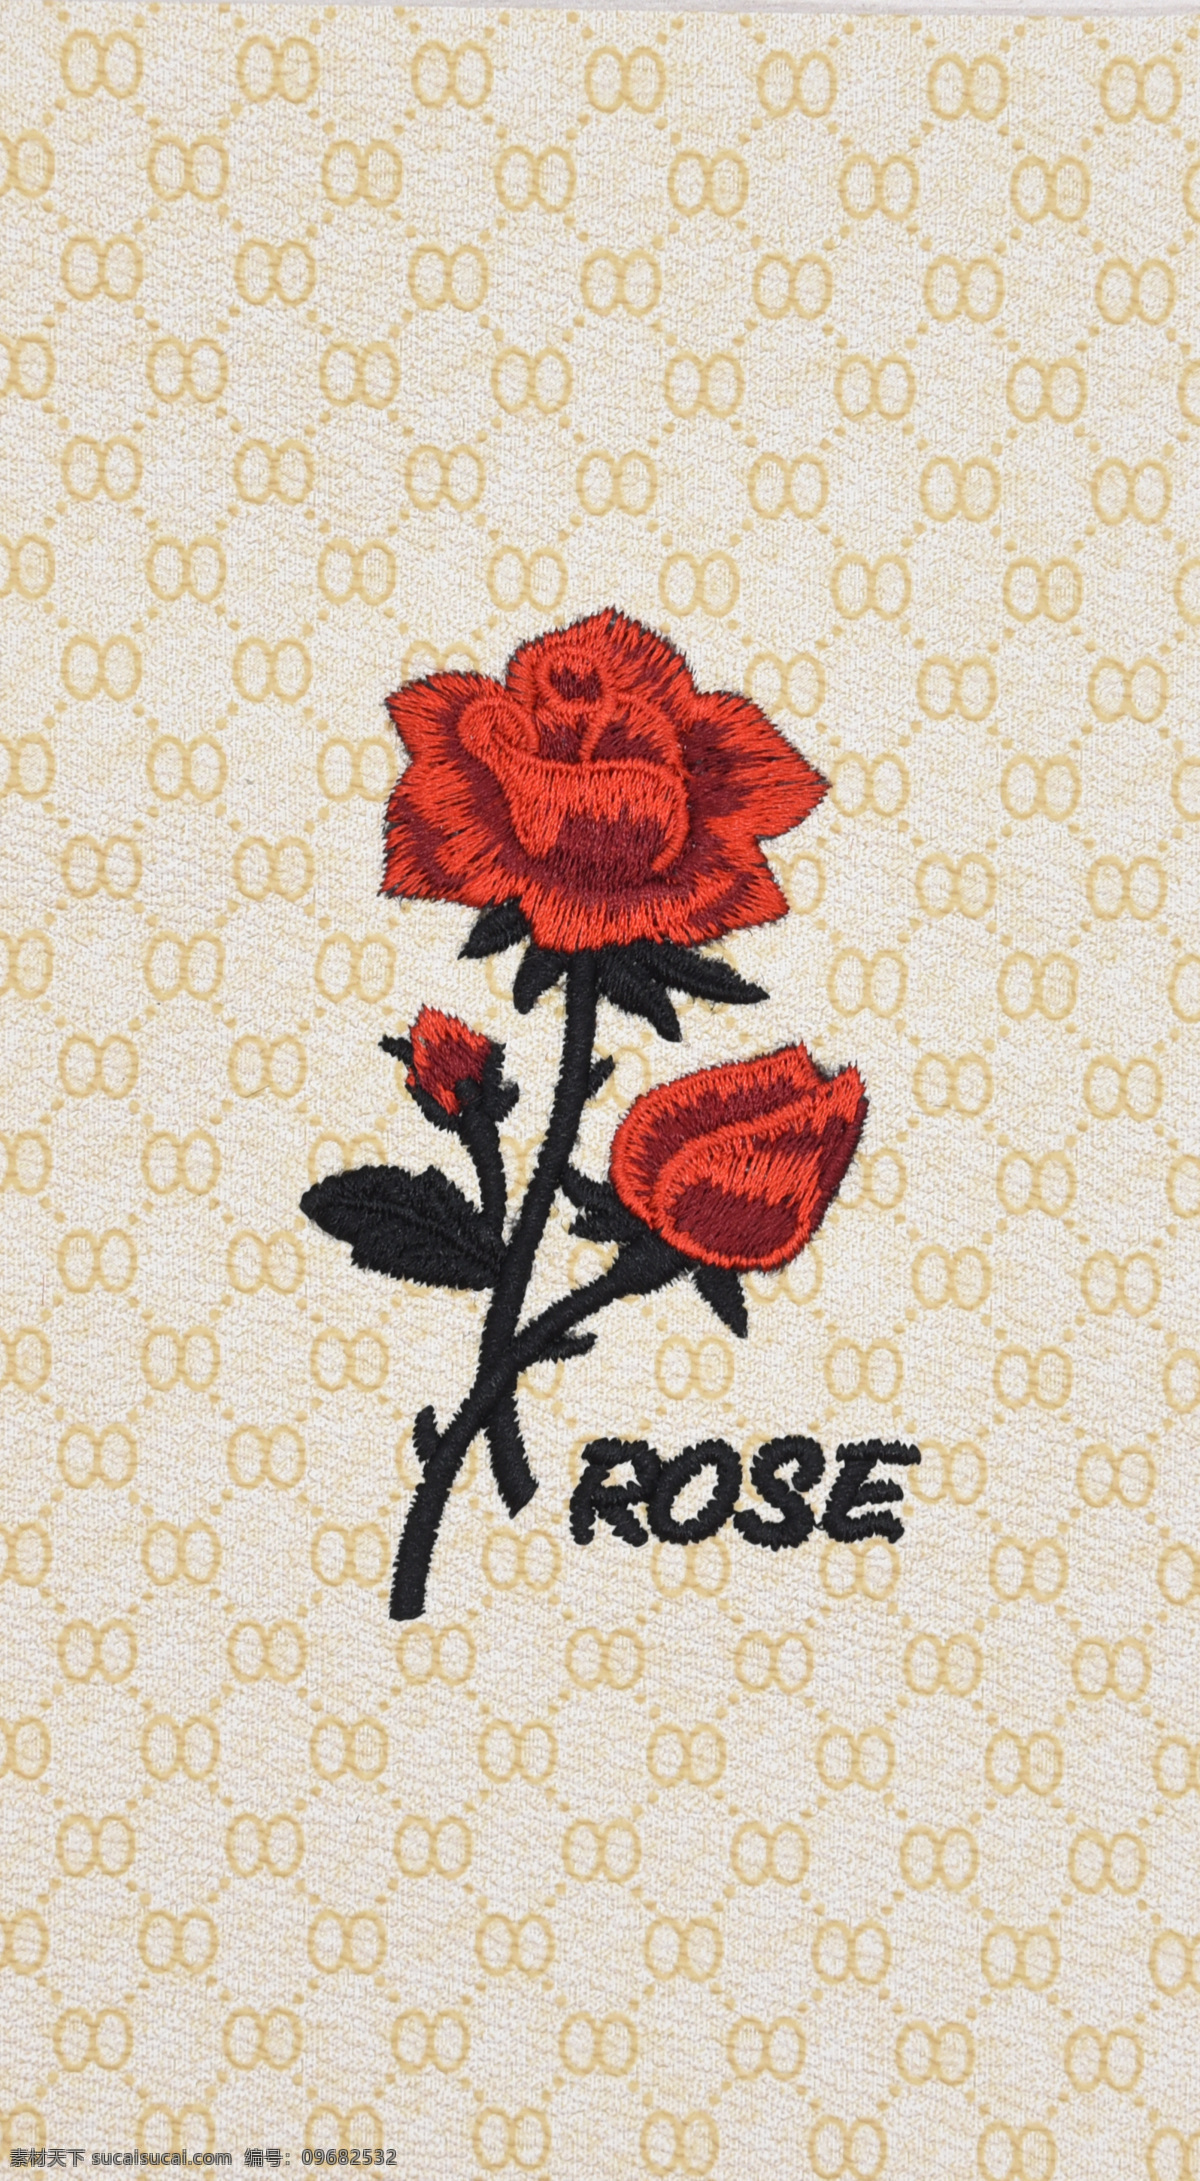 玫瑰花 3d效果 艺术效果 艺术 数码印花 刺绣效果 rose 皮料 刺绣图集 生活百科 生活素材